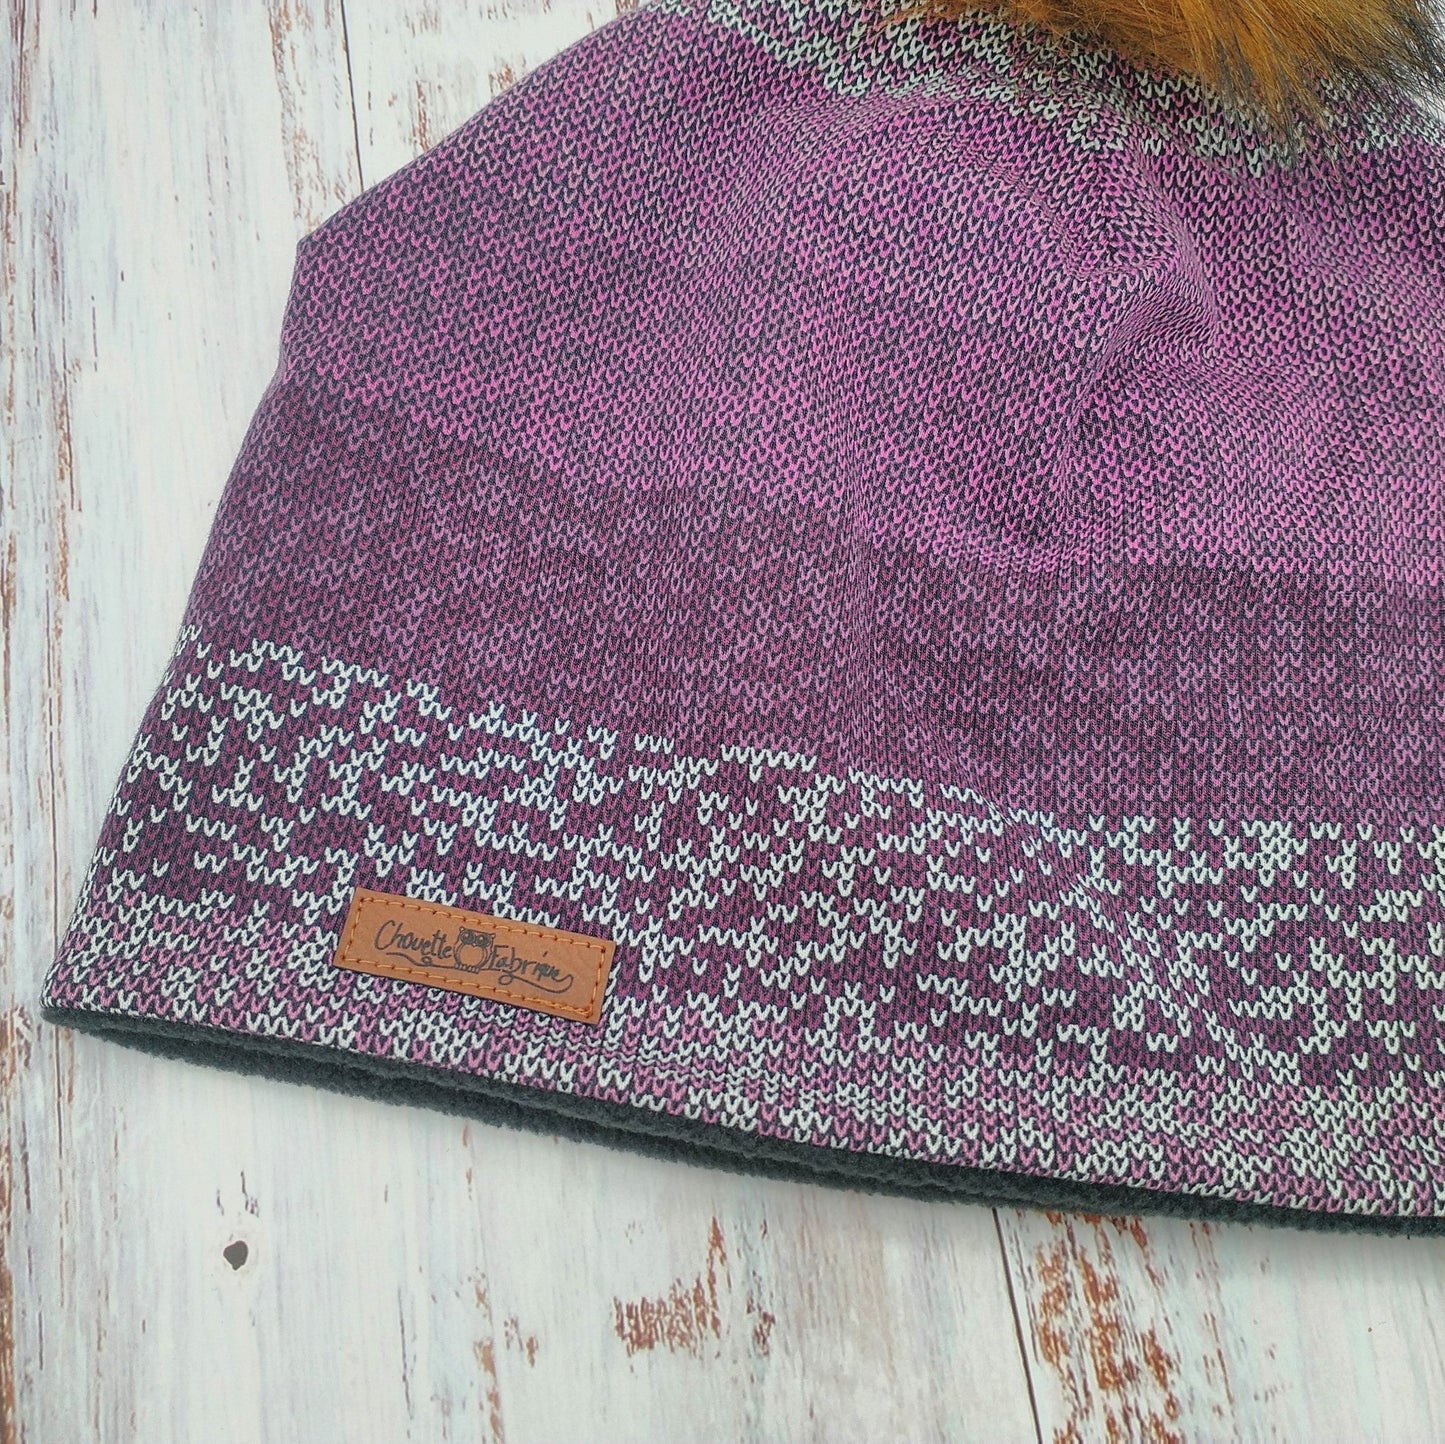 Tuque Hiver (POLAR) Pompon amovible - Violet "style tricot"